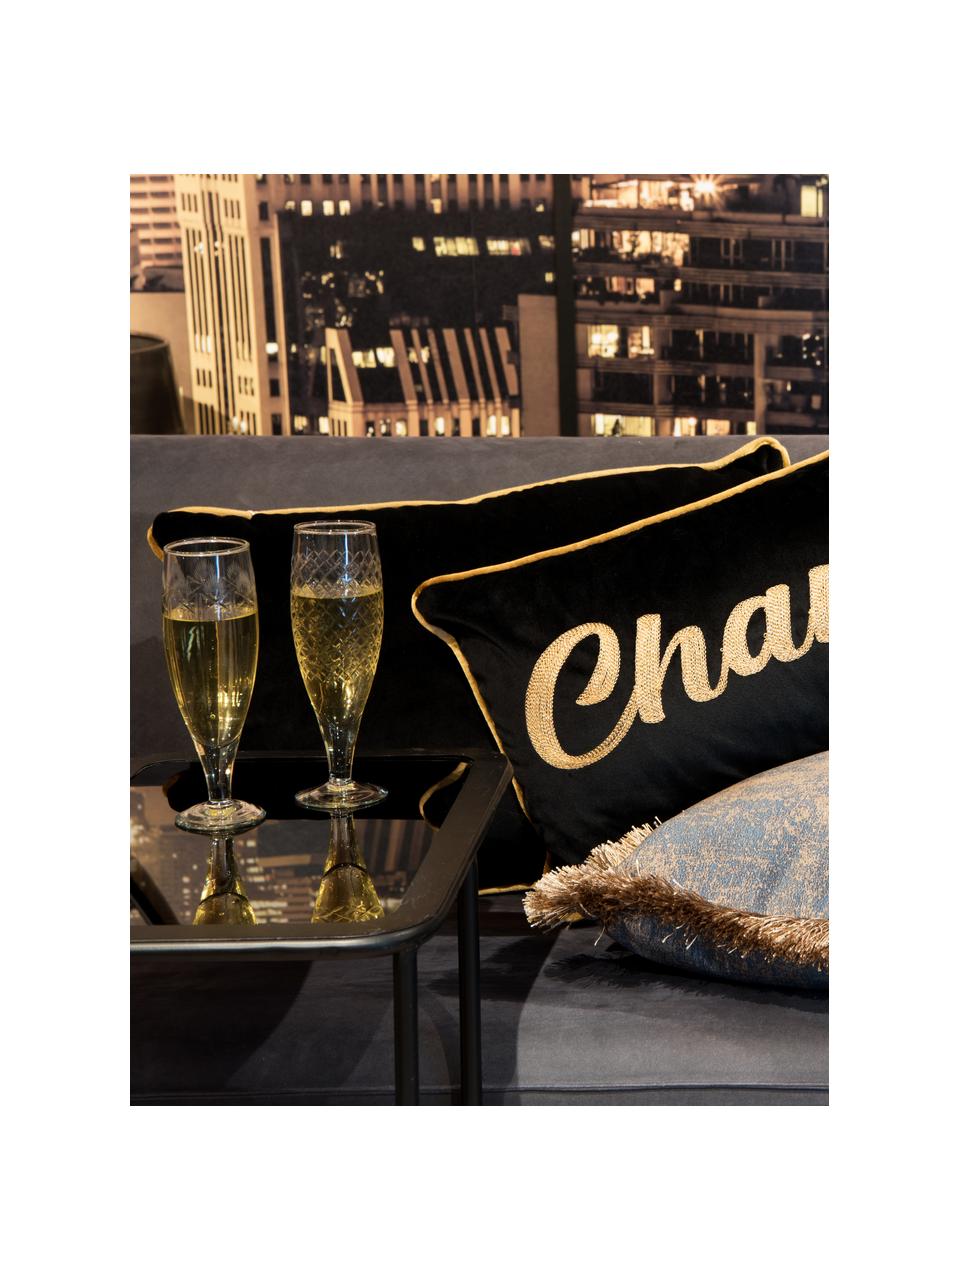 Poduszka z aksamitu z wypełnieniem Champagne, Aksamit poliestrowy, Czarny, odcienie złotego, S 30 x D 80 cm